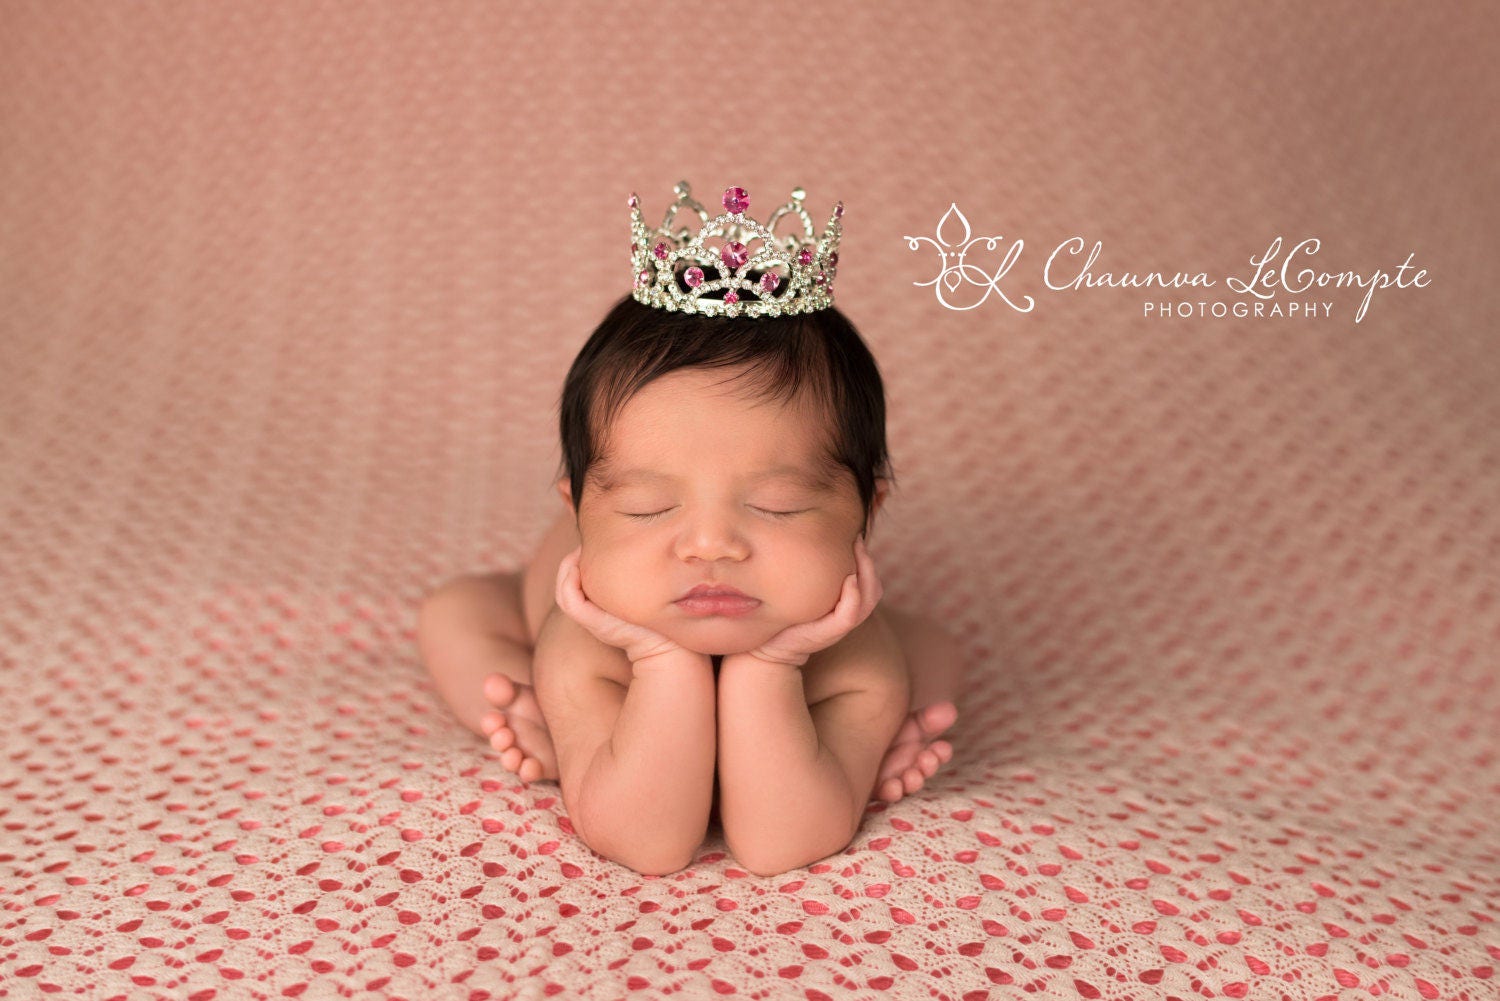 Pink Newborn Rhinestone Crown / First Birthday Crown / Baby Shower Gift / Newborn Photo Prop / Flower Girl / Baby Girl Crown / Baby Tiara